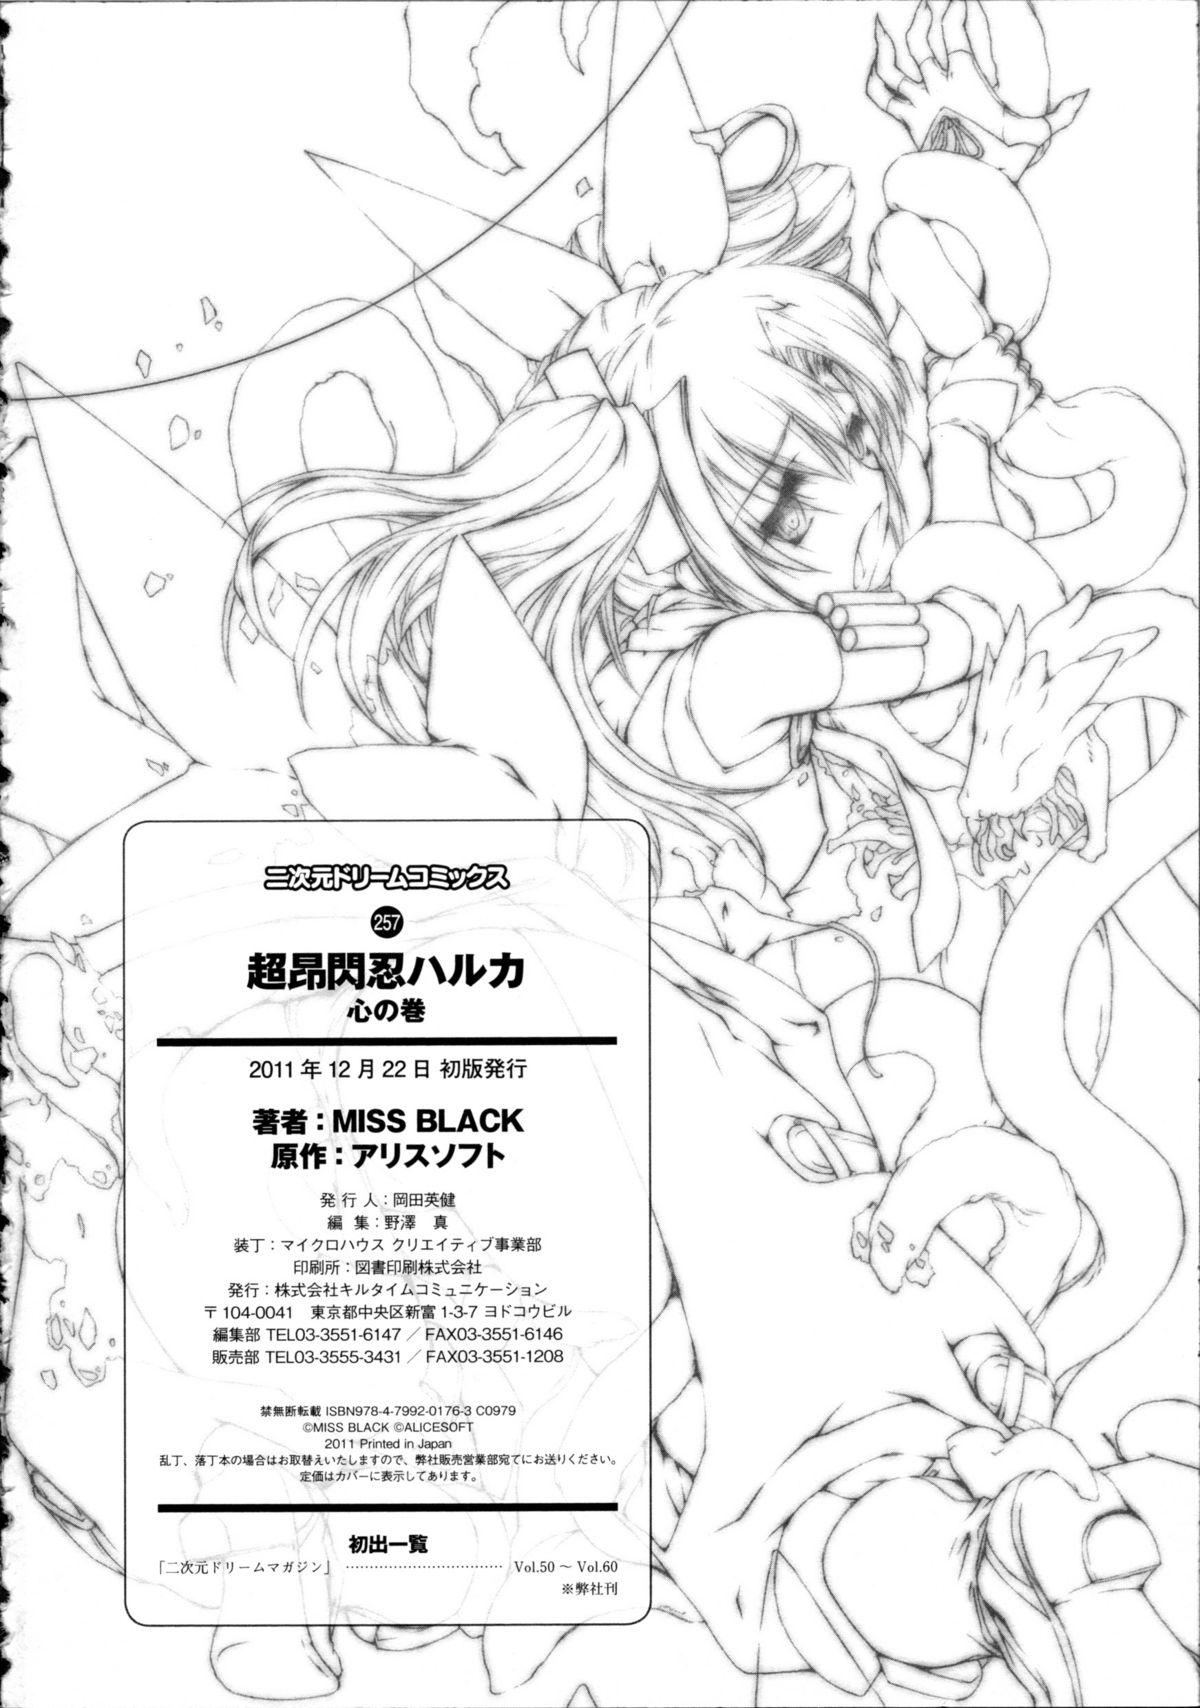 Camgirls Choukou Sennin Haruka Kokoro no Maki - Beat blades haruka Penis - Page 243